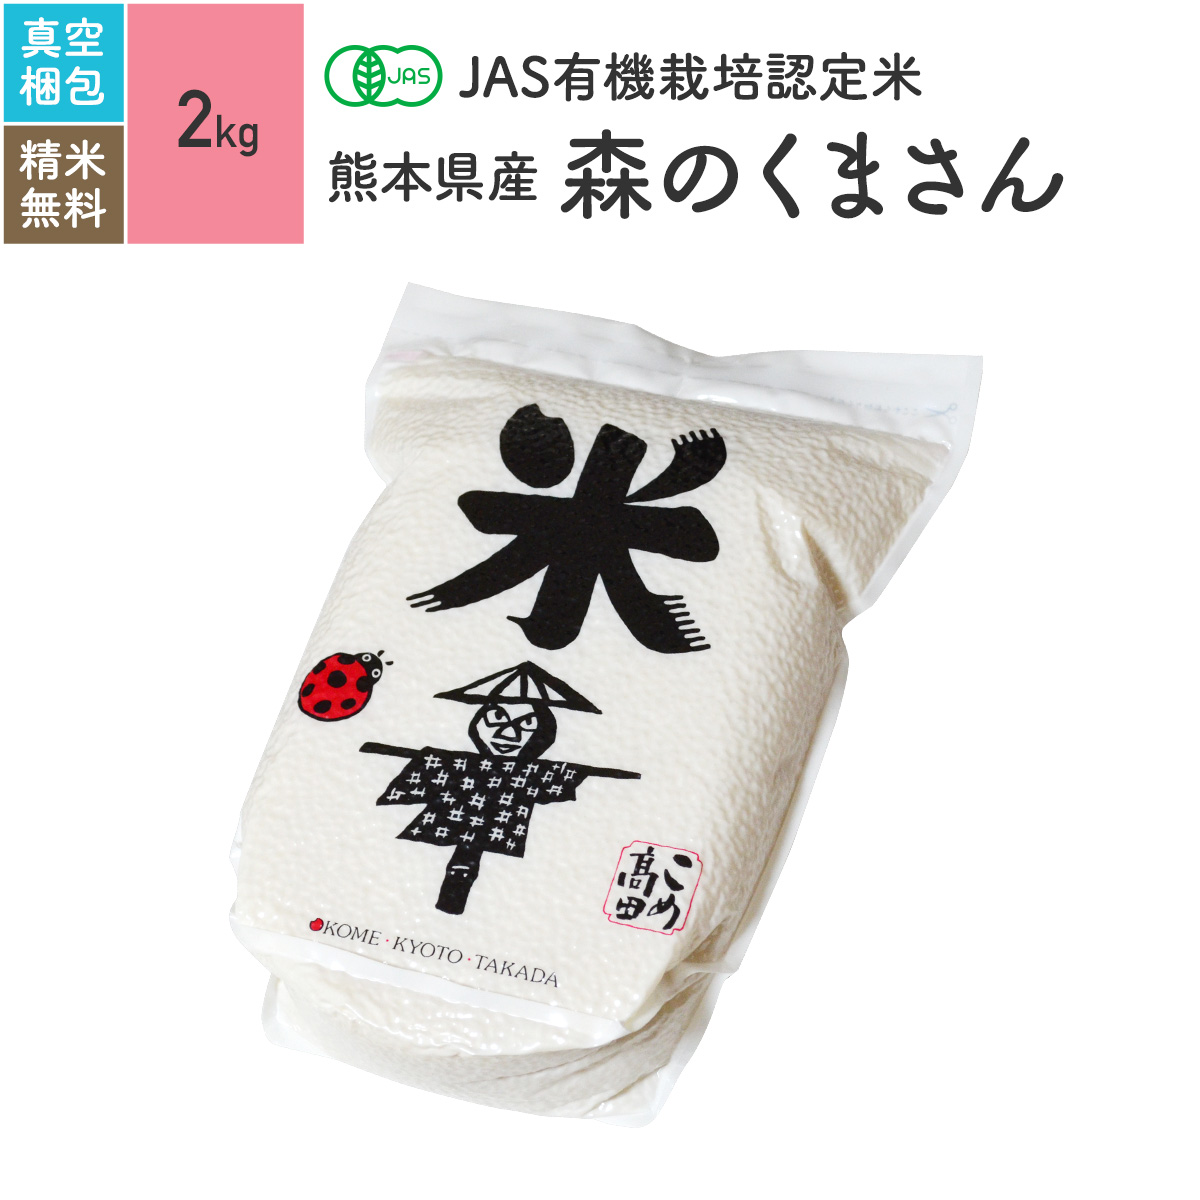 無農薬 玄米 米 2kg熊本県産 森のくまさん JAS有機米 令和元年産